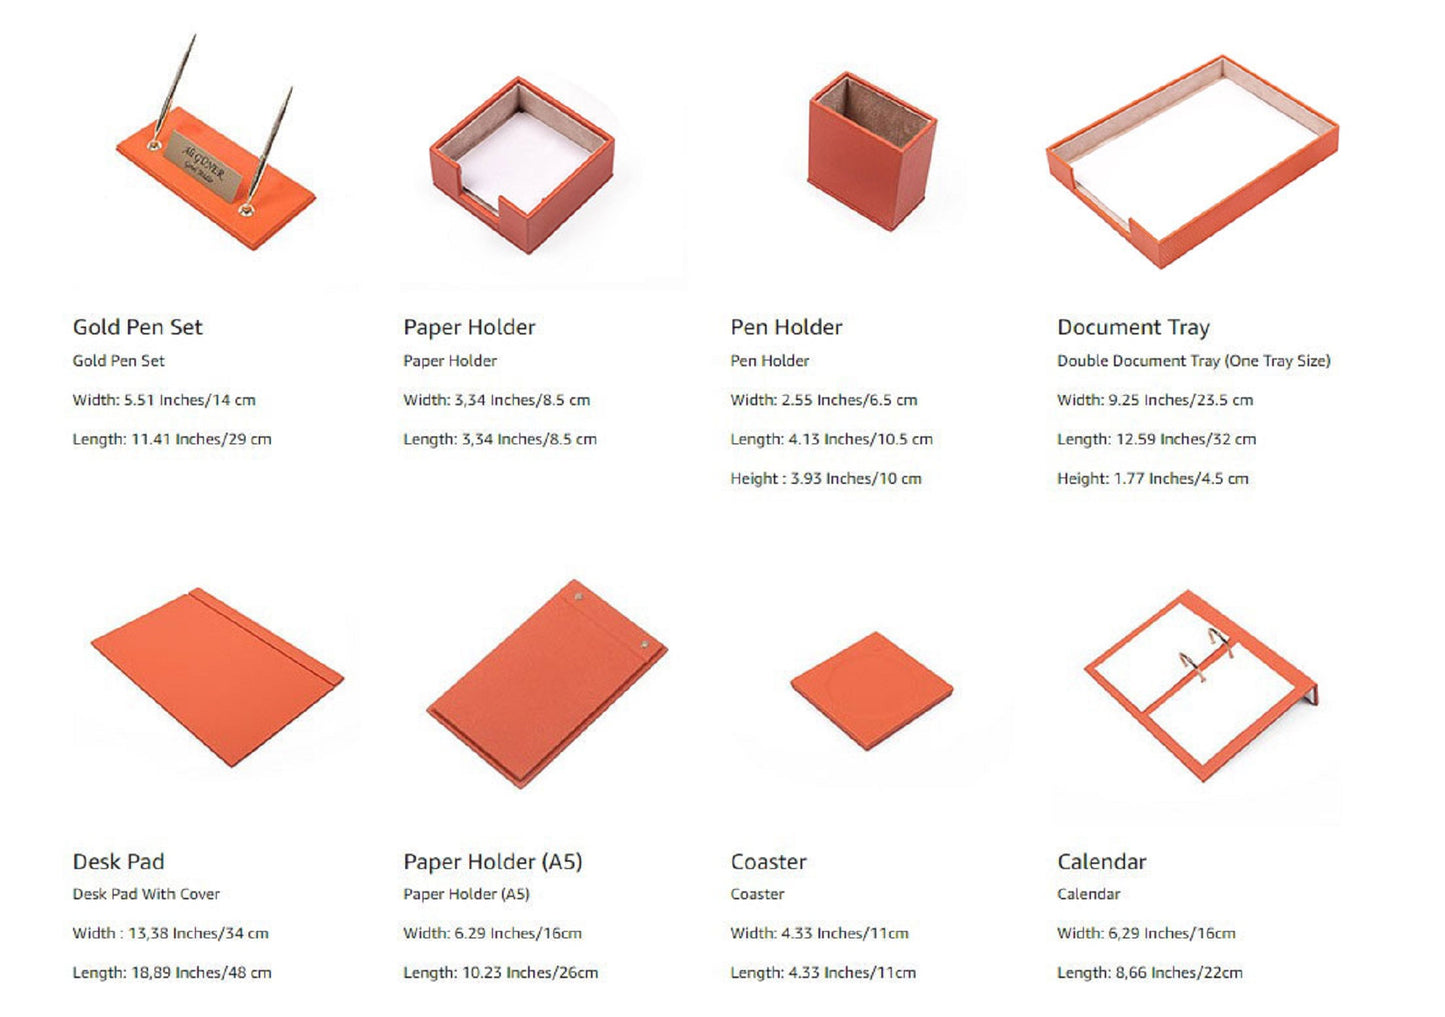 MOOG  Leather Desk Set-10 Accessories-Desk Organizer-Desk Office Accessories-Office Organizer- Single Document Tray  -10 PCS